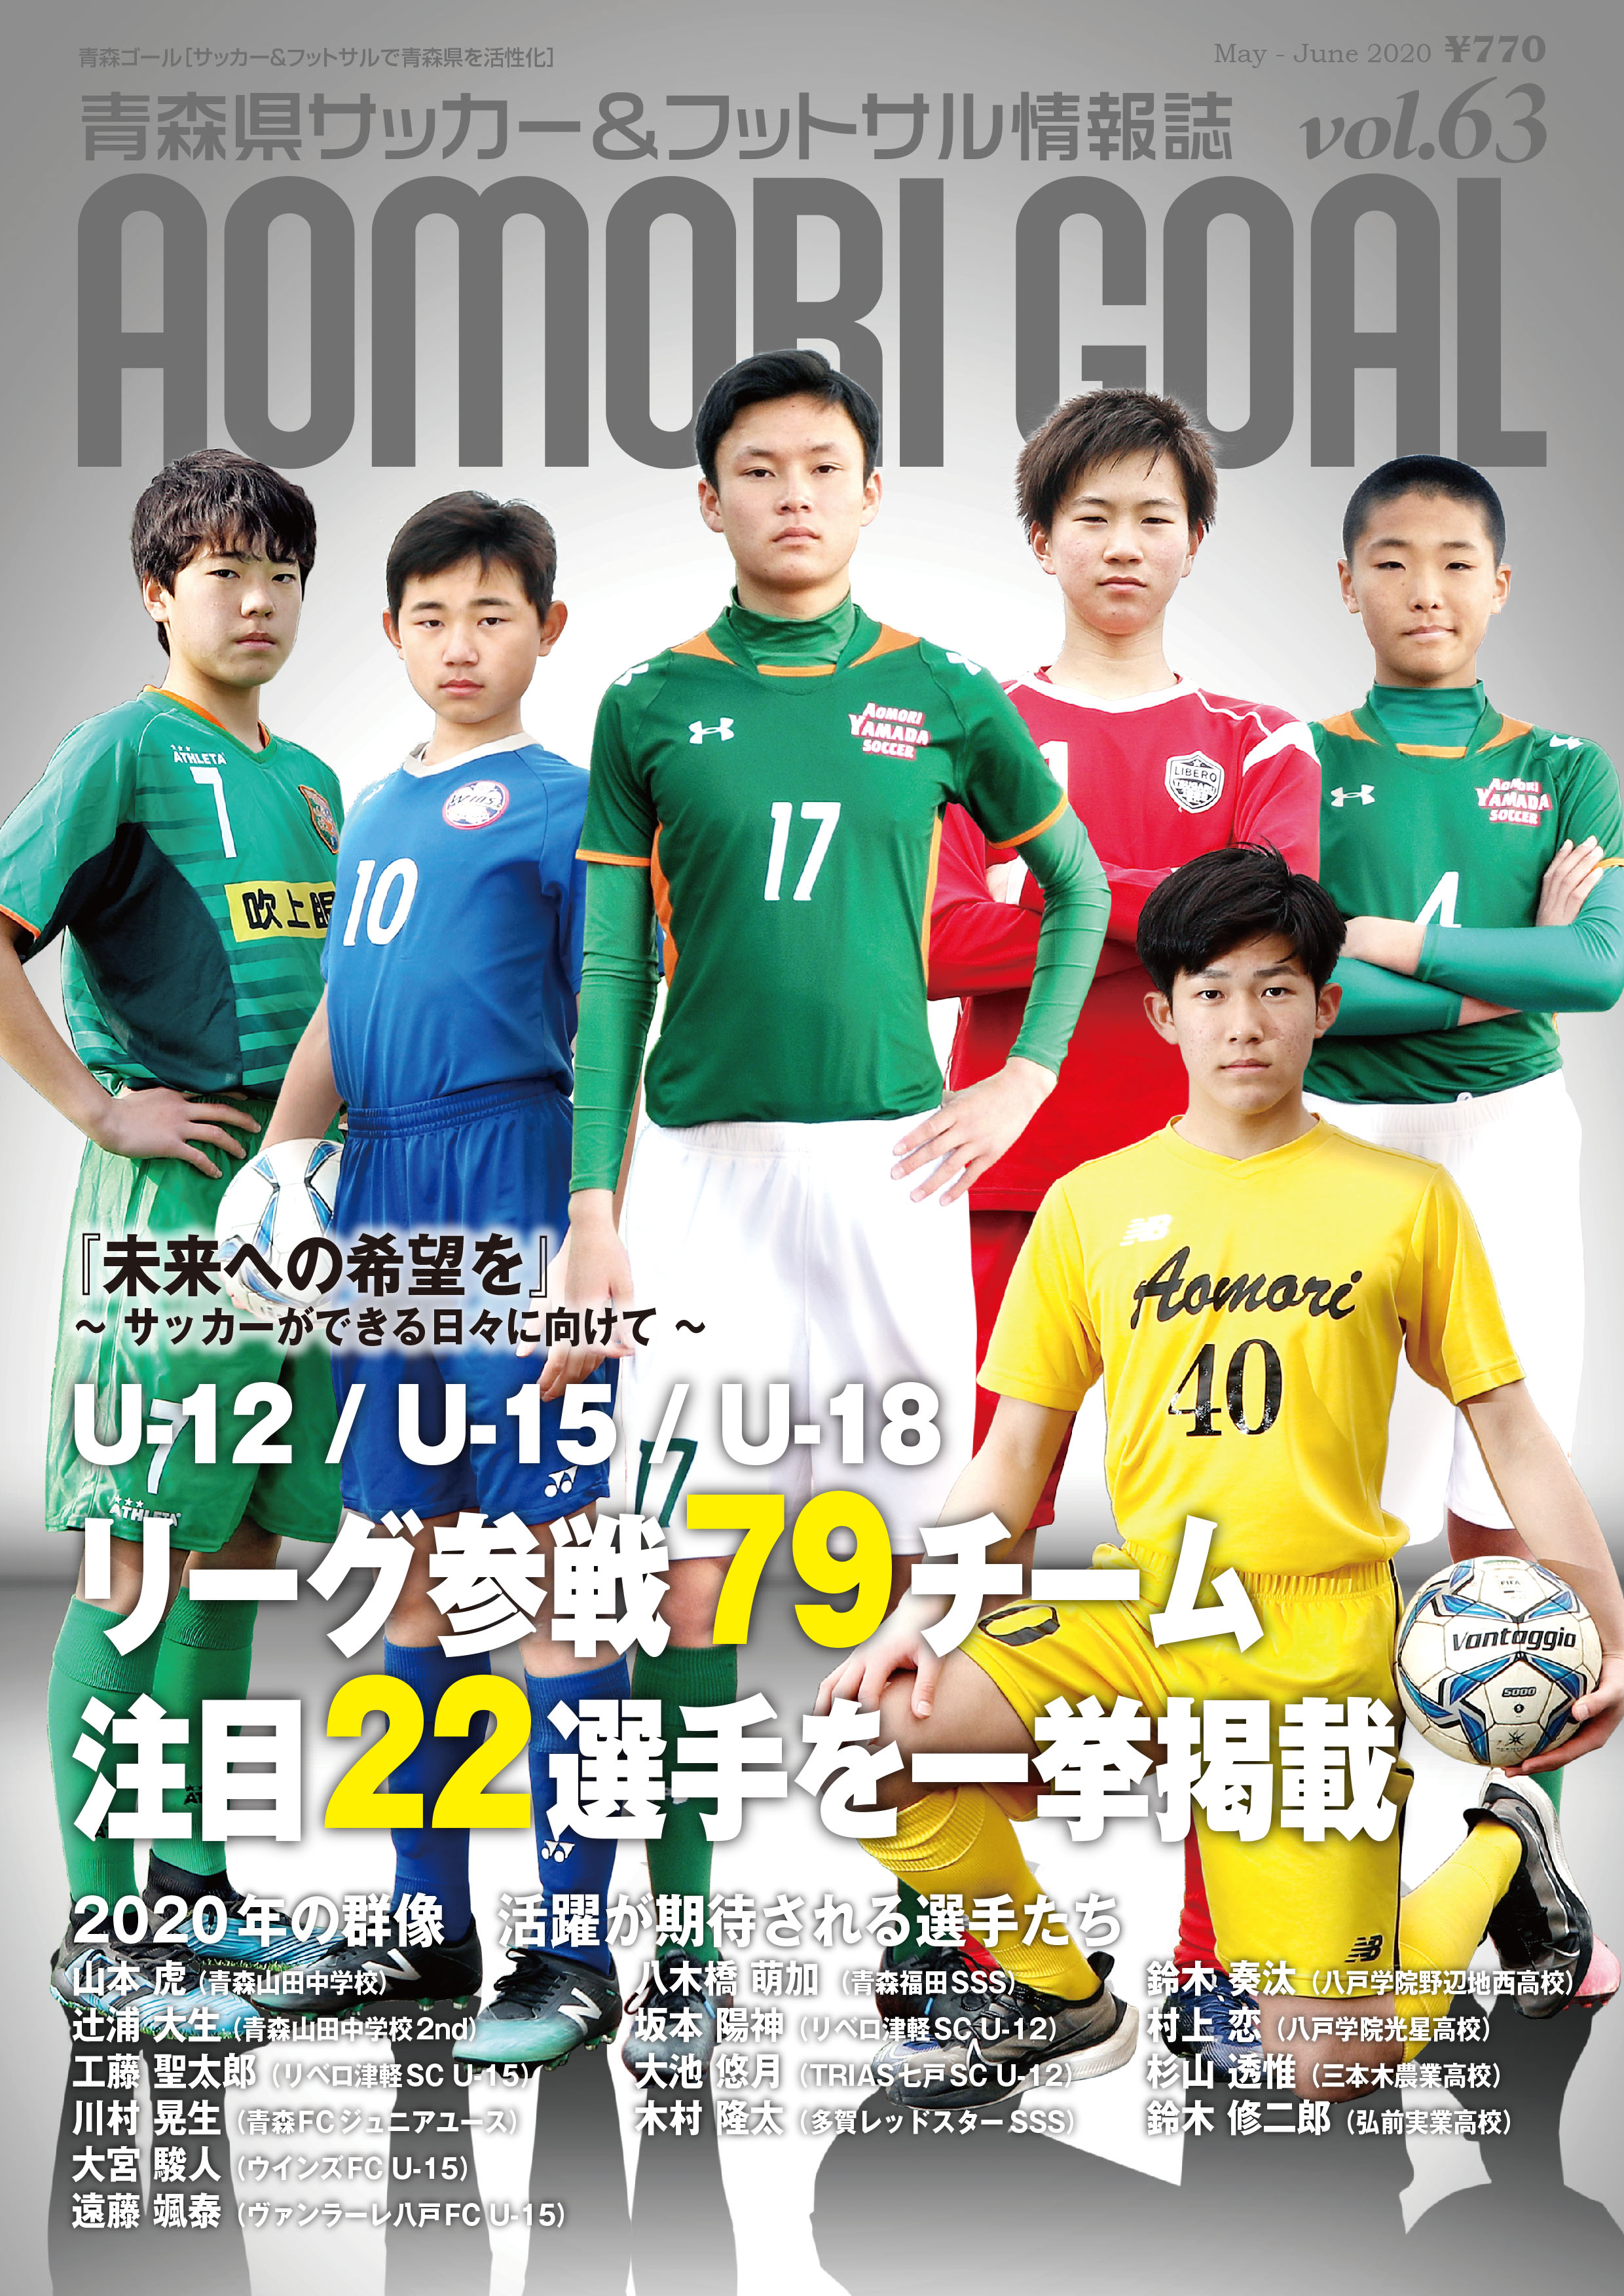 最新号 Aomori Goal Vol 63 ５月１日 金 に発売 News Topics News Topics 青森ゴール Aomori Goal 青森県サッカー フットサルマガジン